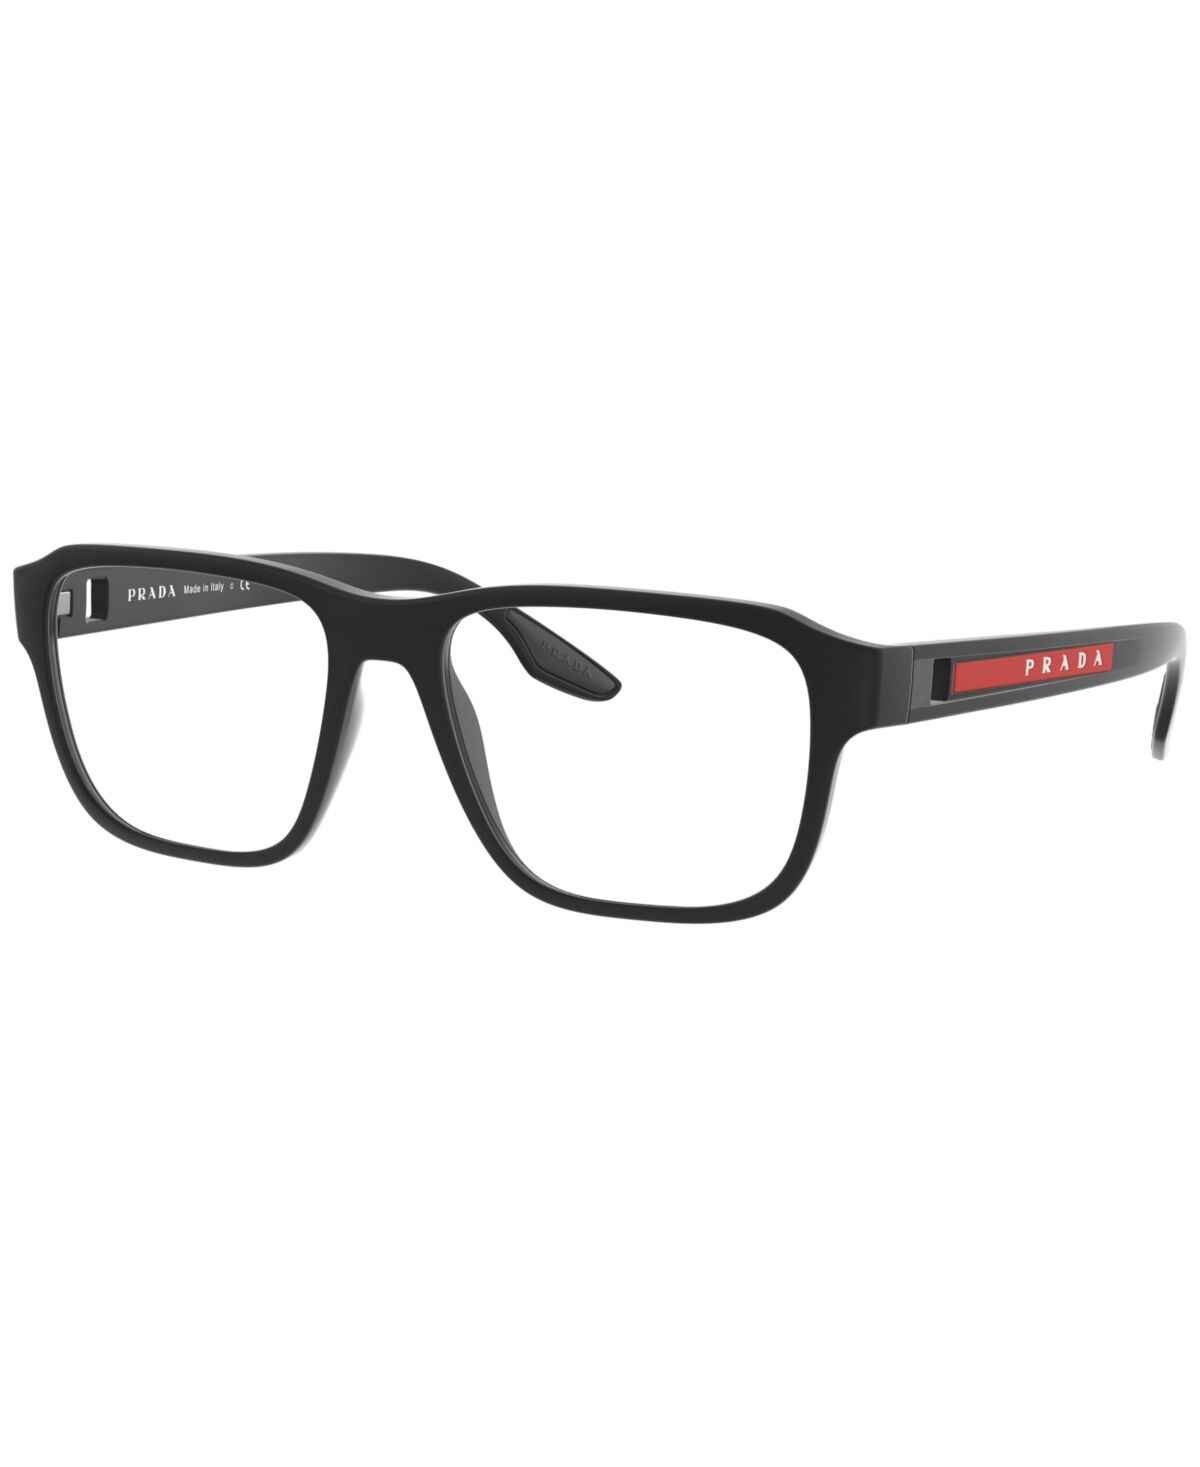 Prada Linea Rossa Men's Eyeglasses, Ps 04NV - Rubber Black